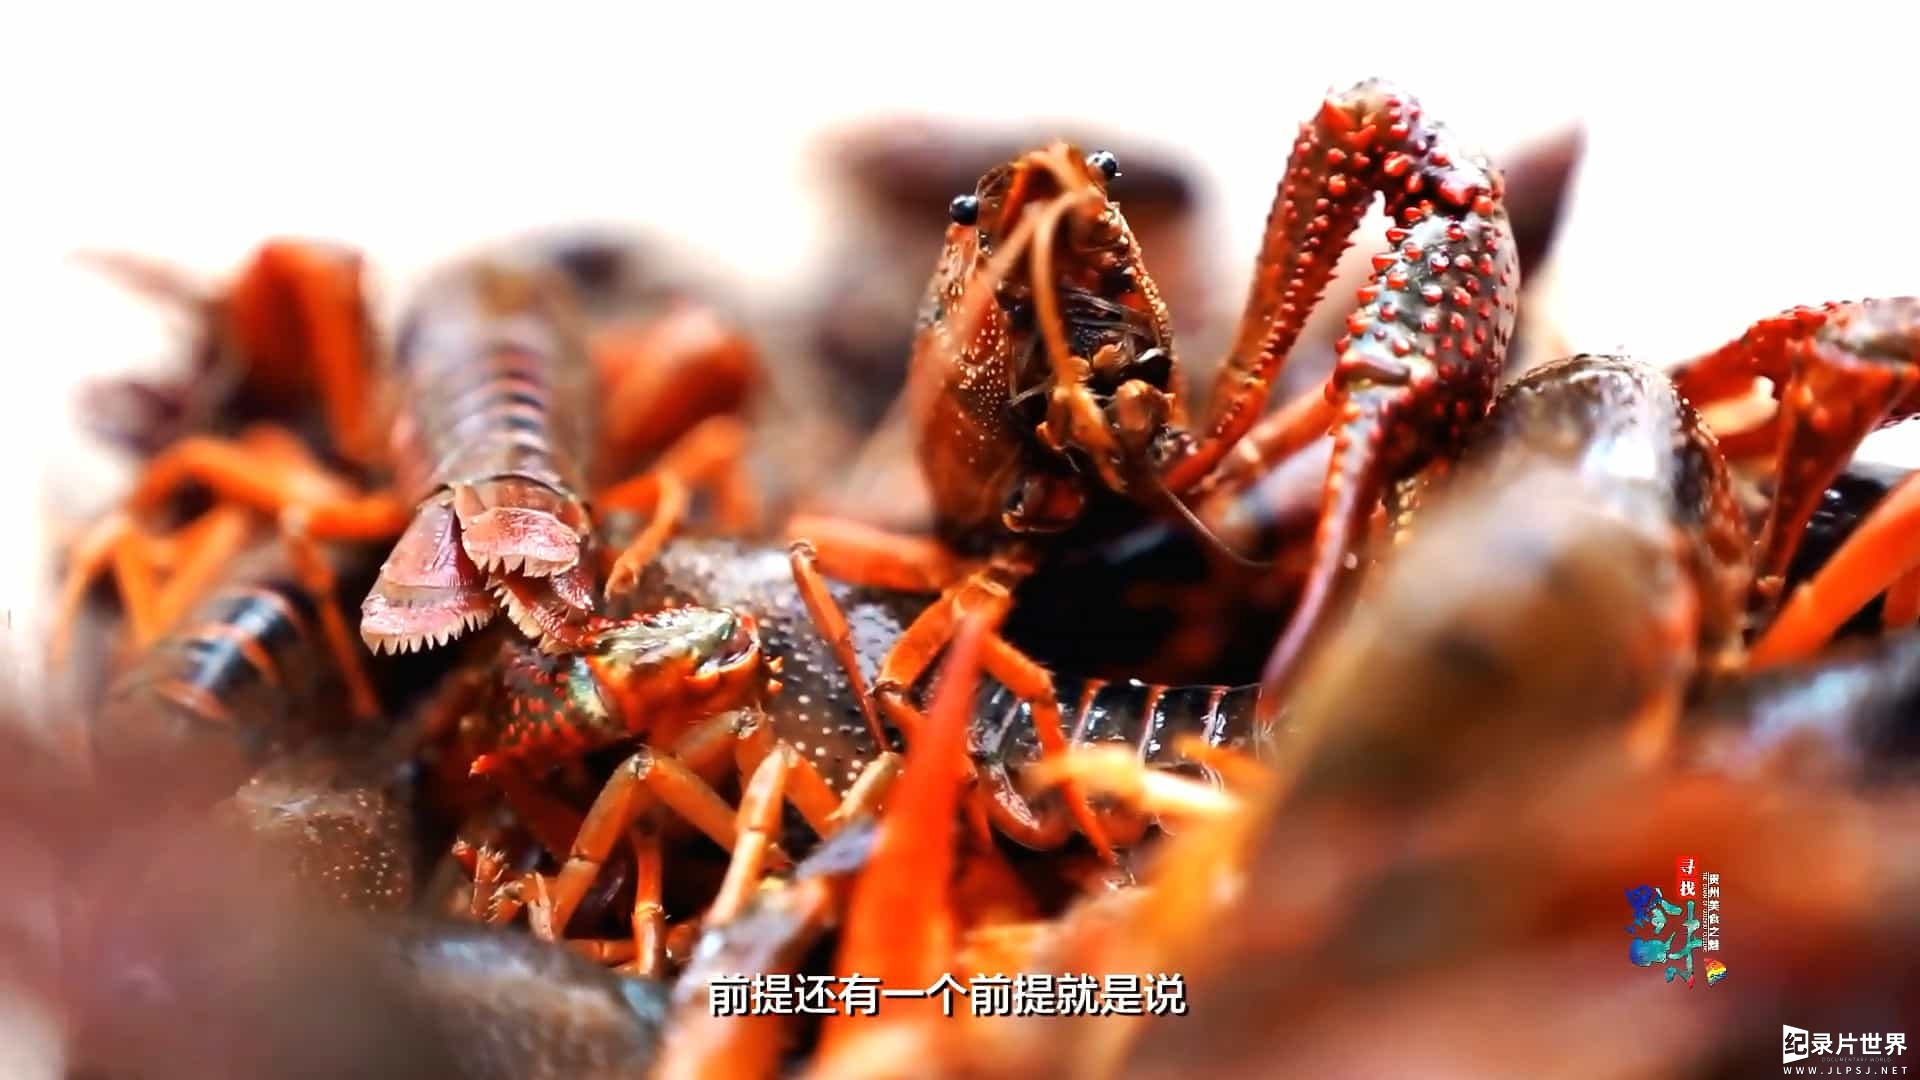 贵州美食纪录片/中国美食系列《寻找黔味 2020》全7集 